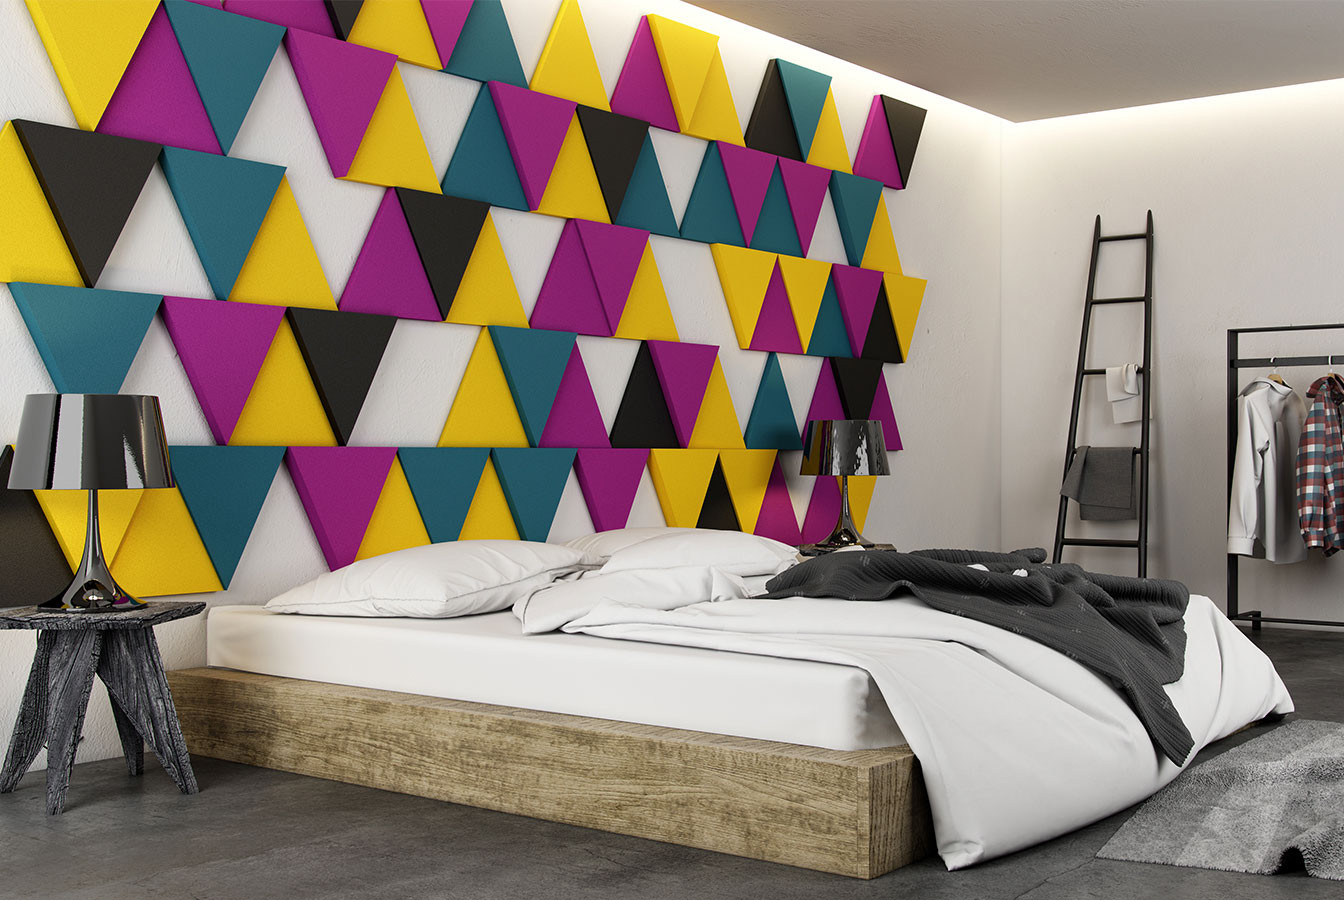 Kreative wohnideen schlafzimmer und coole farbgestaltung mit 3d paneelen e1445944522712.jpg